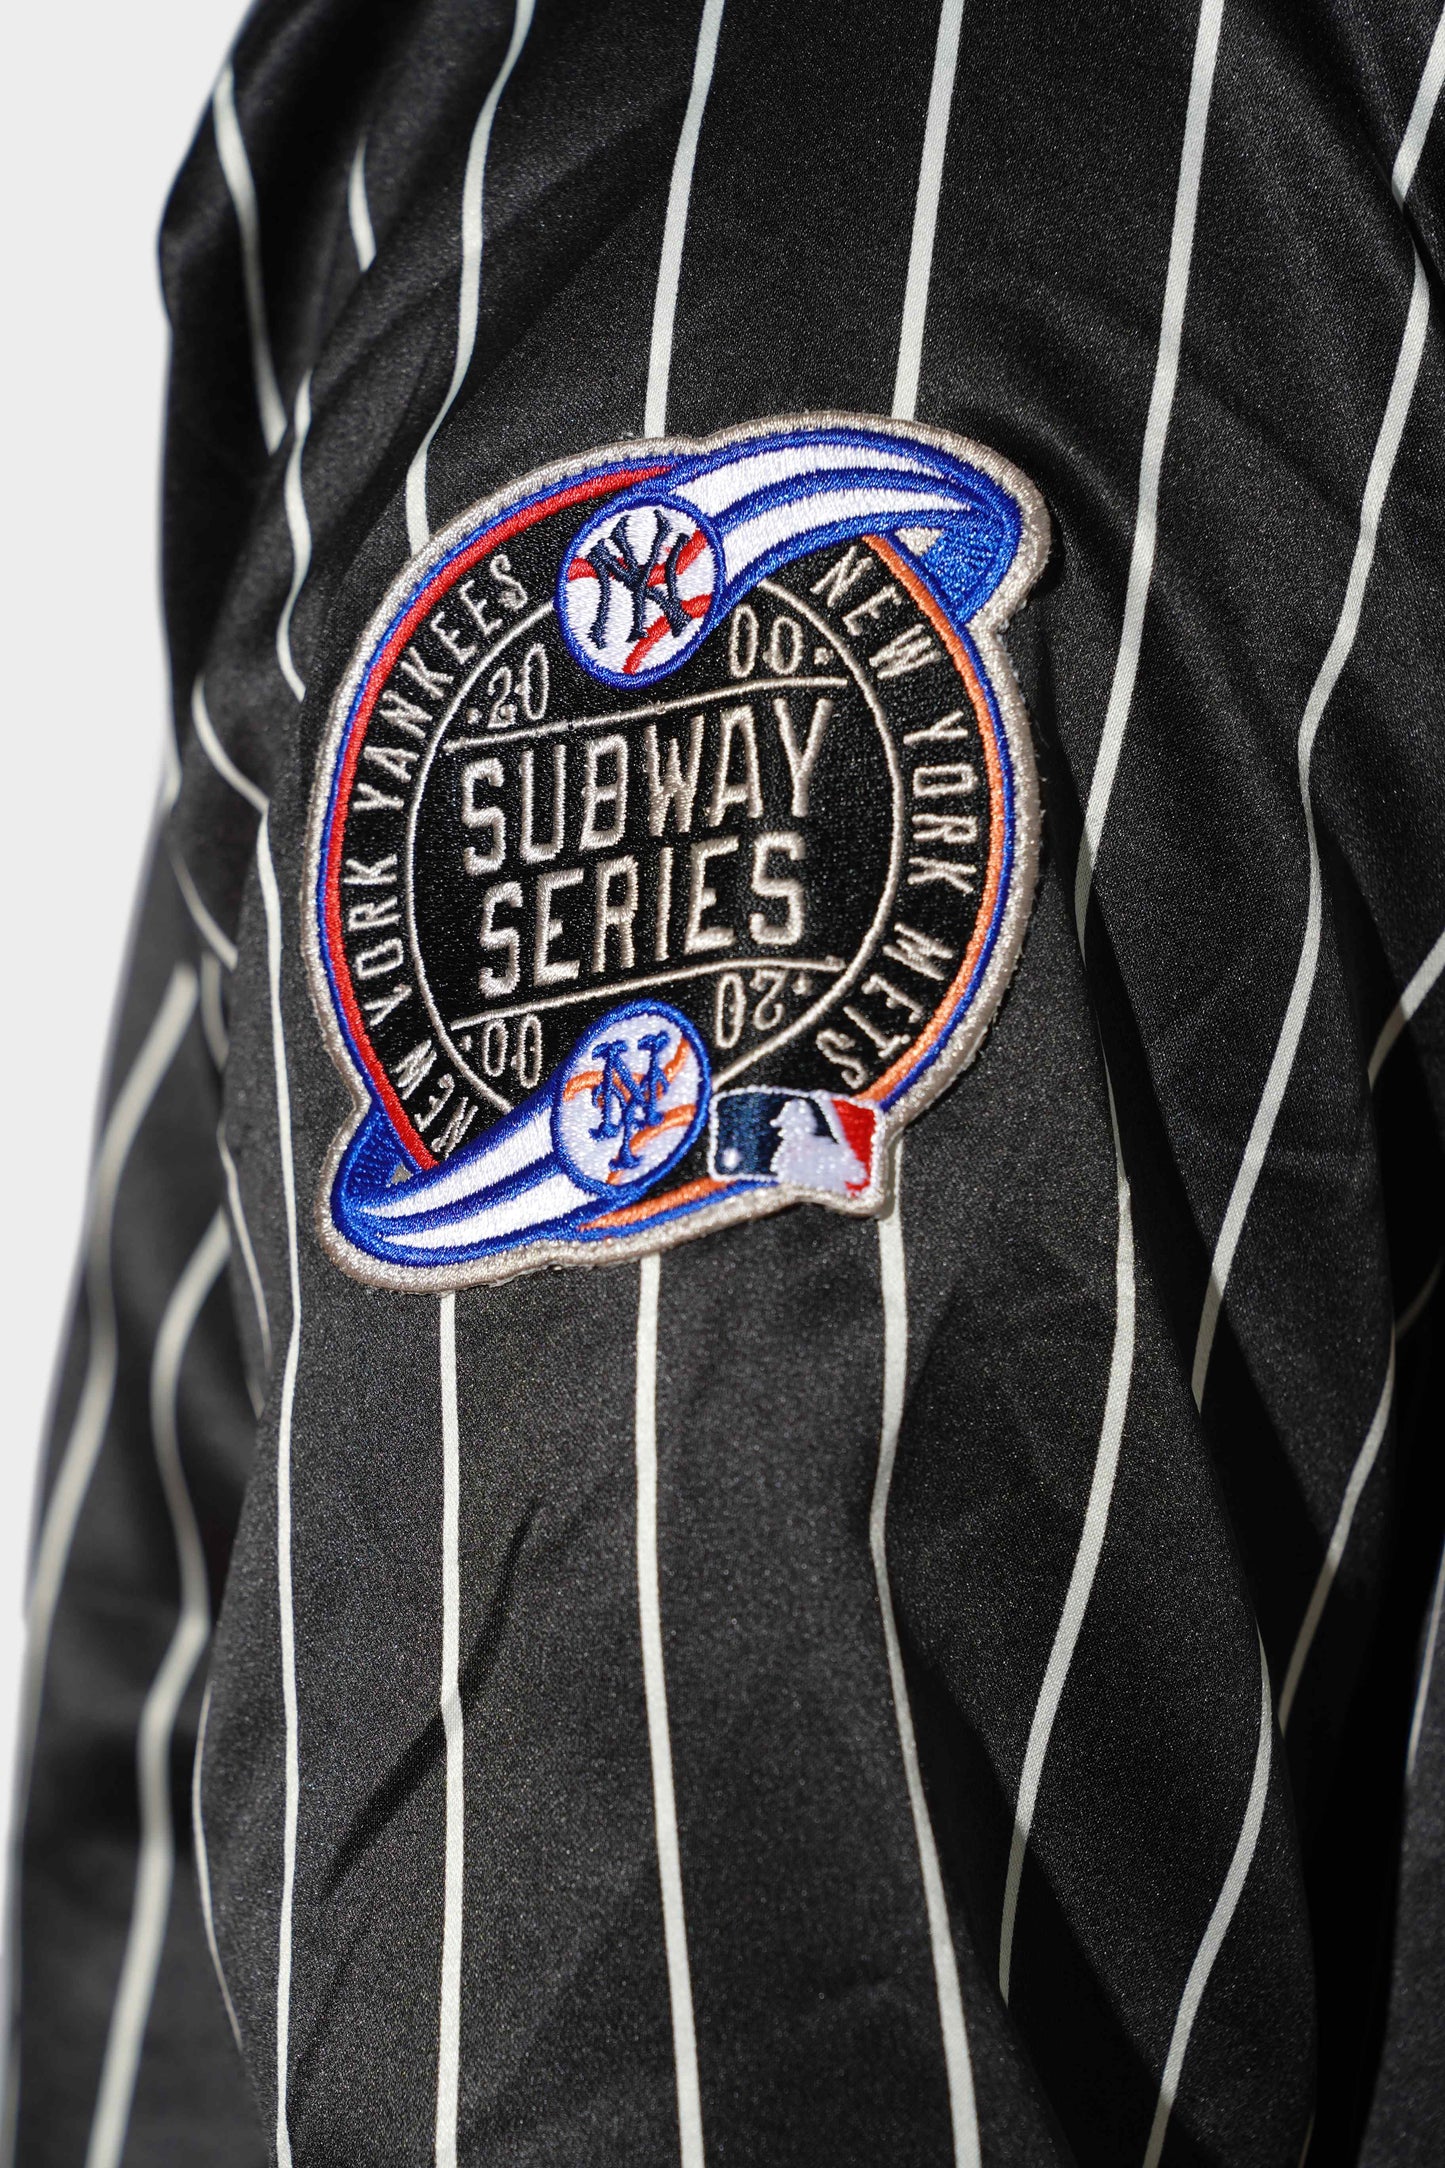 New Era NY Mets Subway Series 2000 Jacket Black